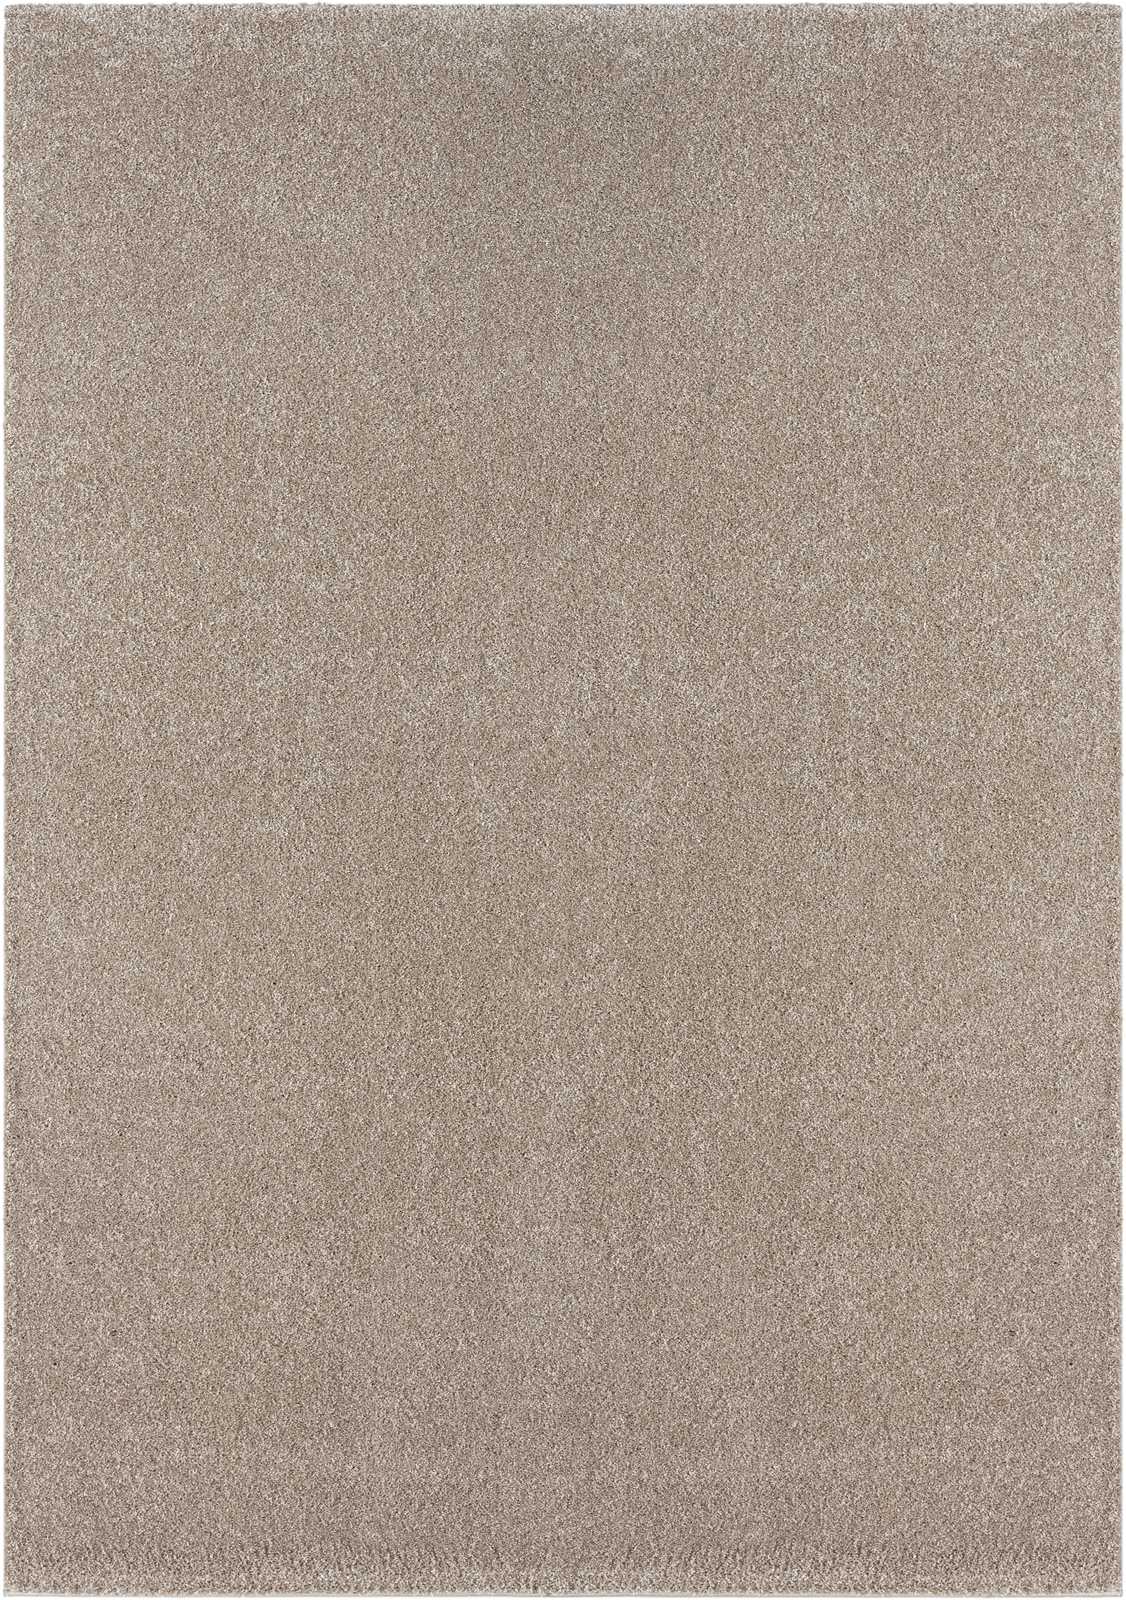             Sanfter Kurzflor Teppich in Beige – 150 x 80 cm
        